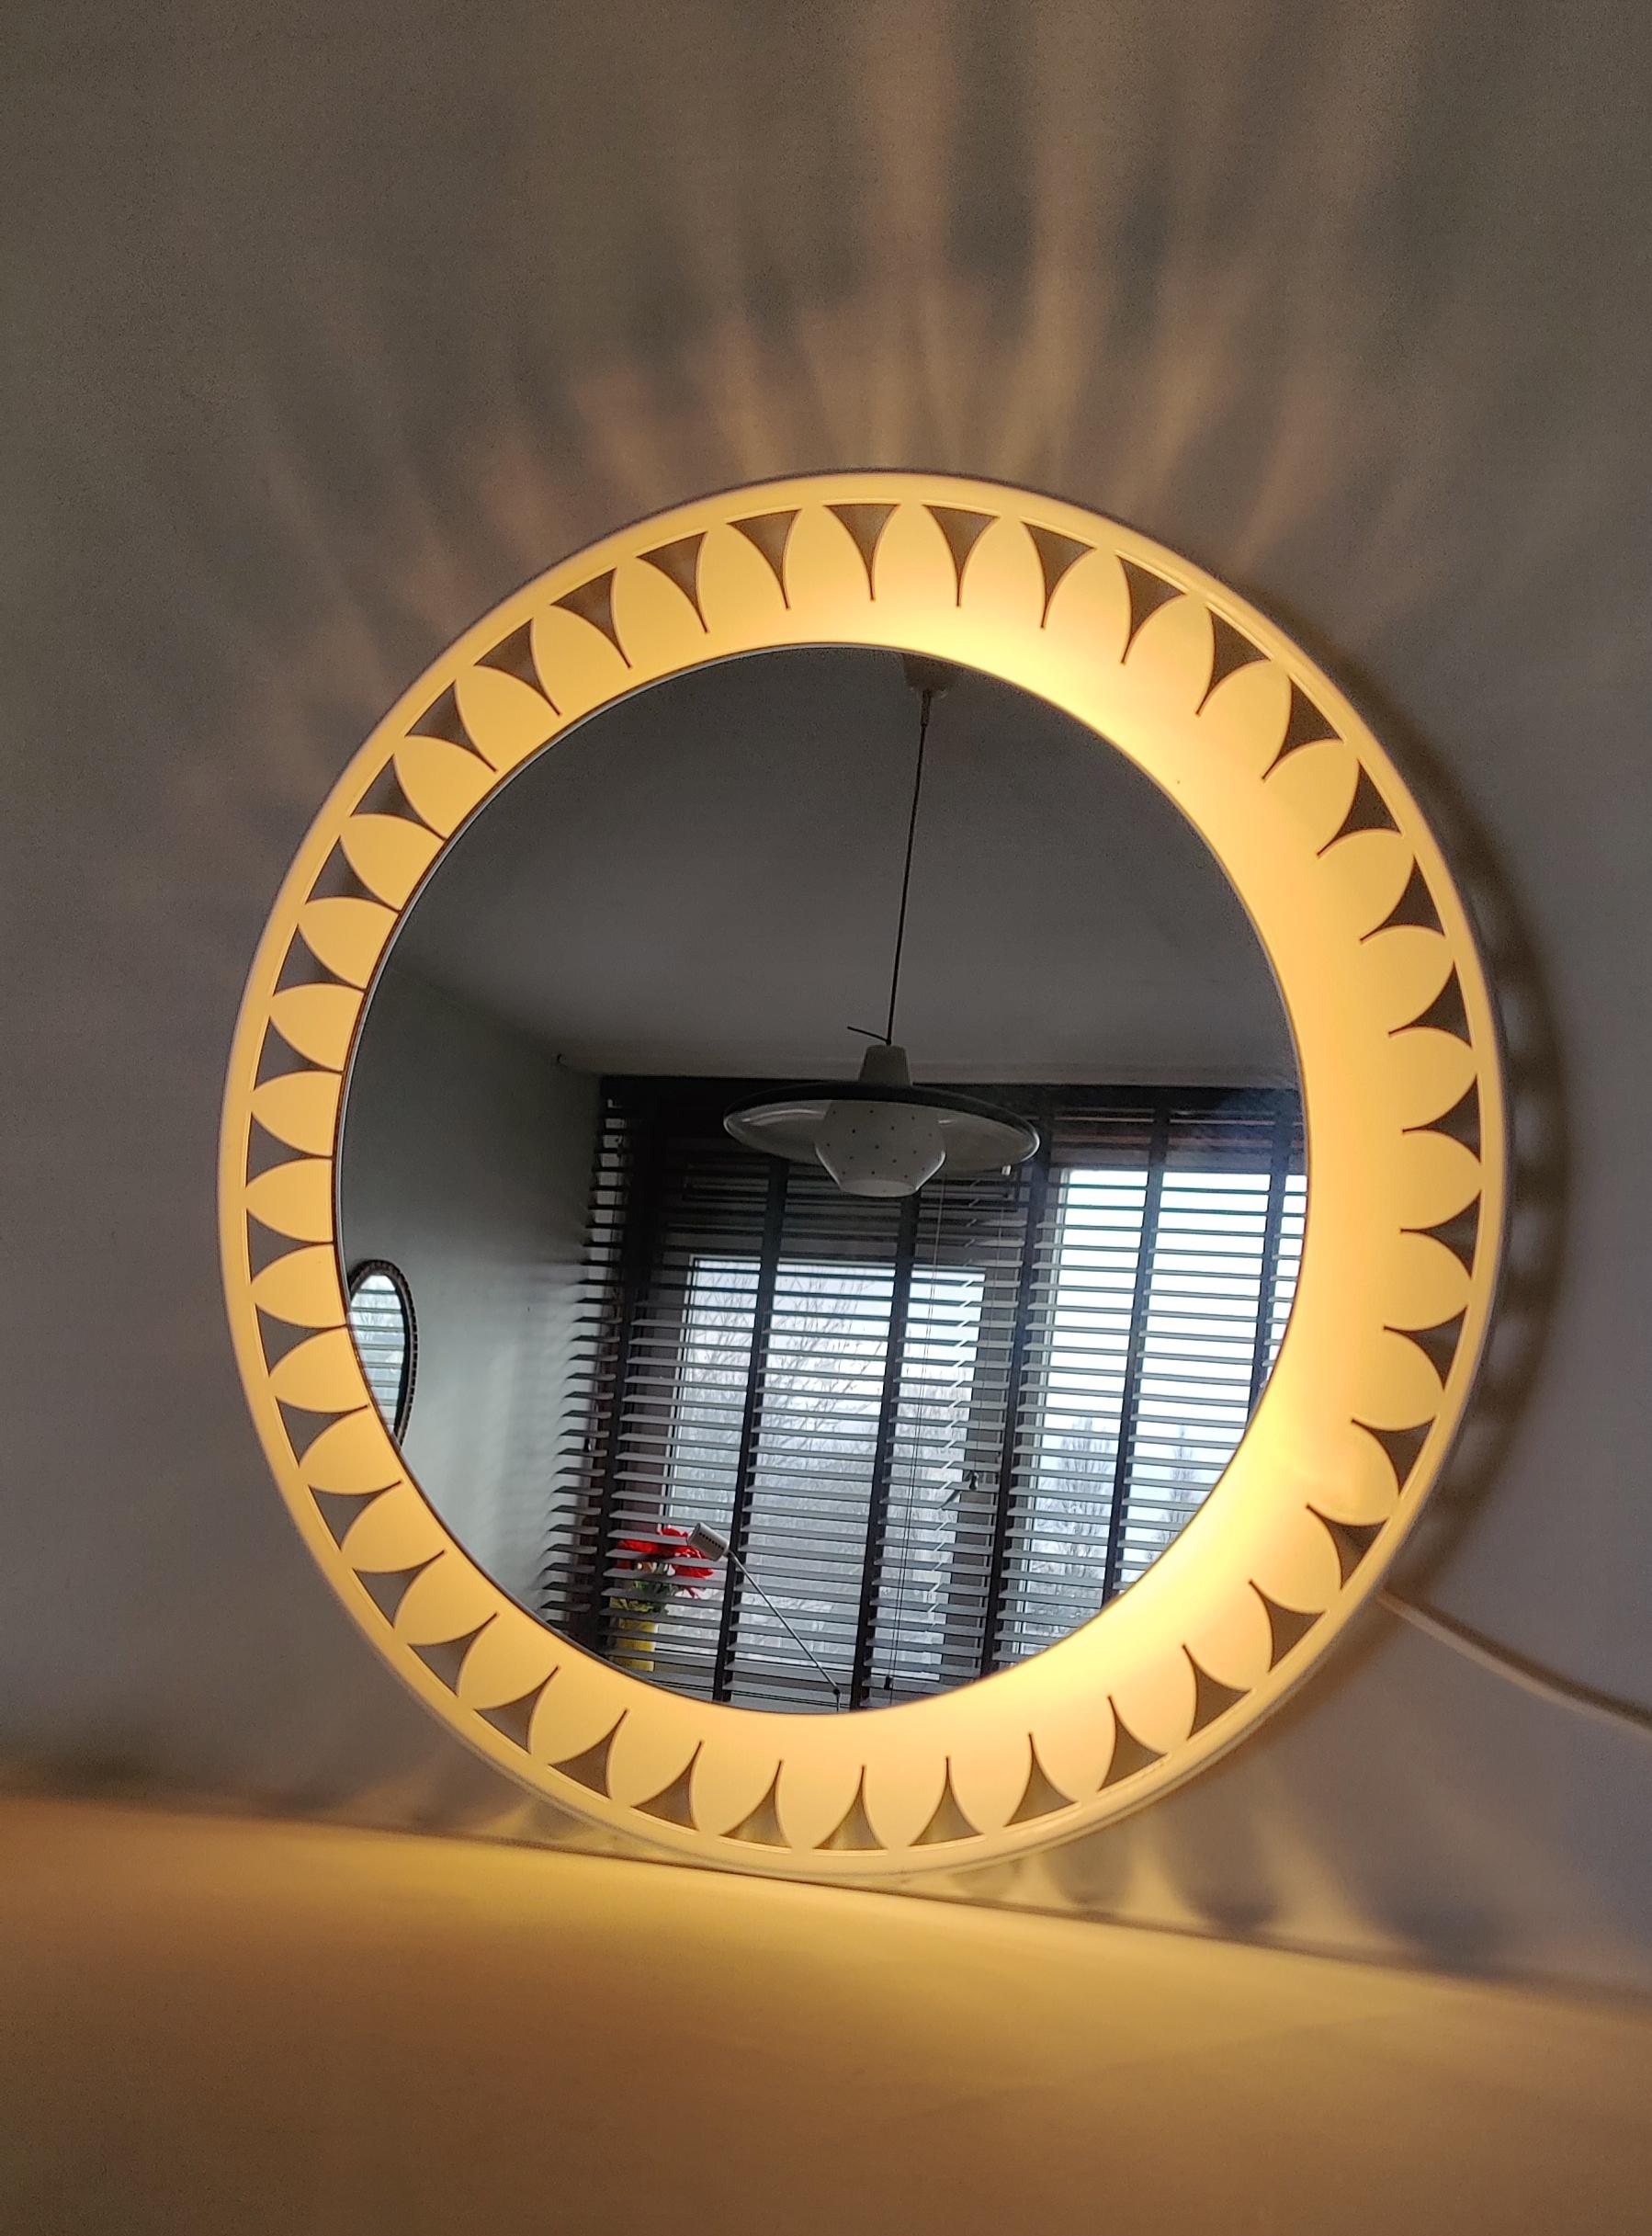 Hillebrand leuchten fabrik  Spiegel von Ernest Igl aus den fünfziger Jahren. Deutsches Kunstwerk. Runder Spiegel aus Metall und Glas. Kann dank des aus drei Glühbirnen bestehenden Beleuchtungssystems auch als Wandleuchte verwendet werden. 